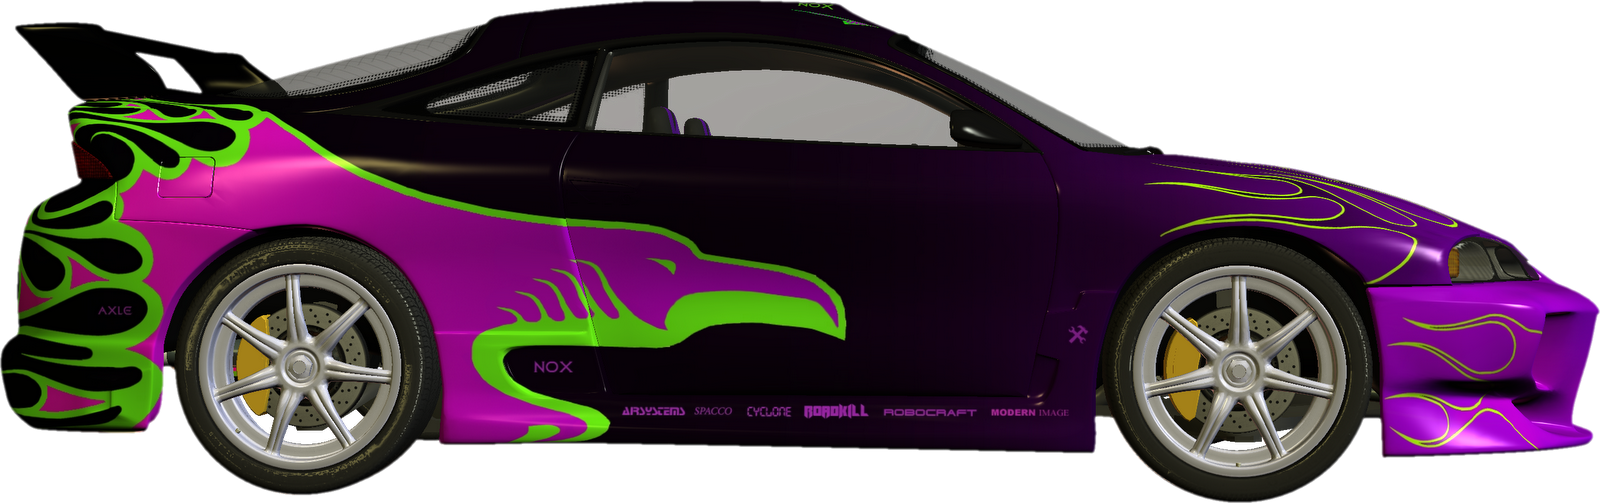 Animated race cars clipart clipartix - Clipartix